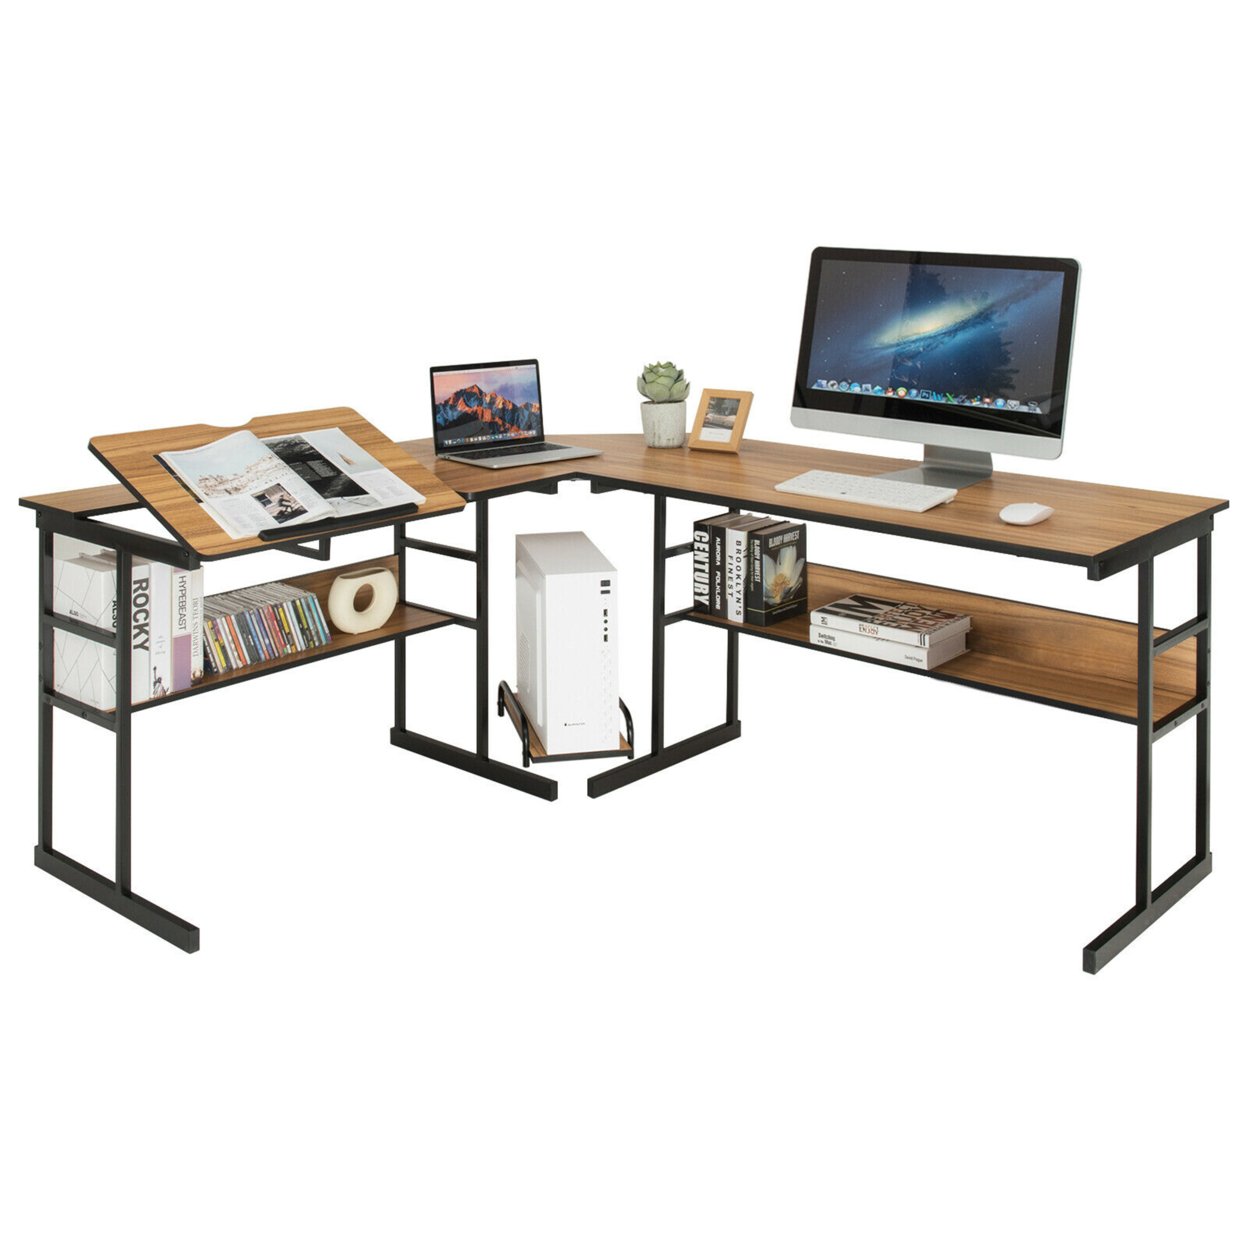 L-Shaped Computer Desk Drafting Table Workstation W/ Tiltable Tabletop - Walnut